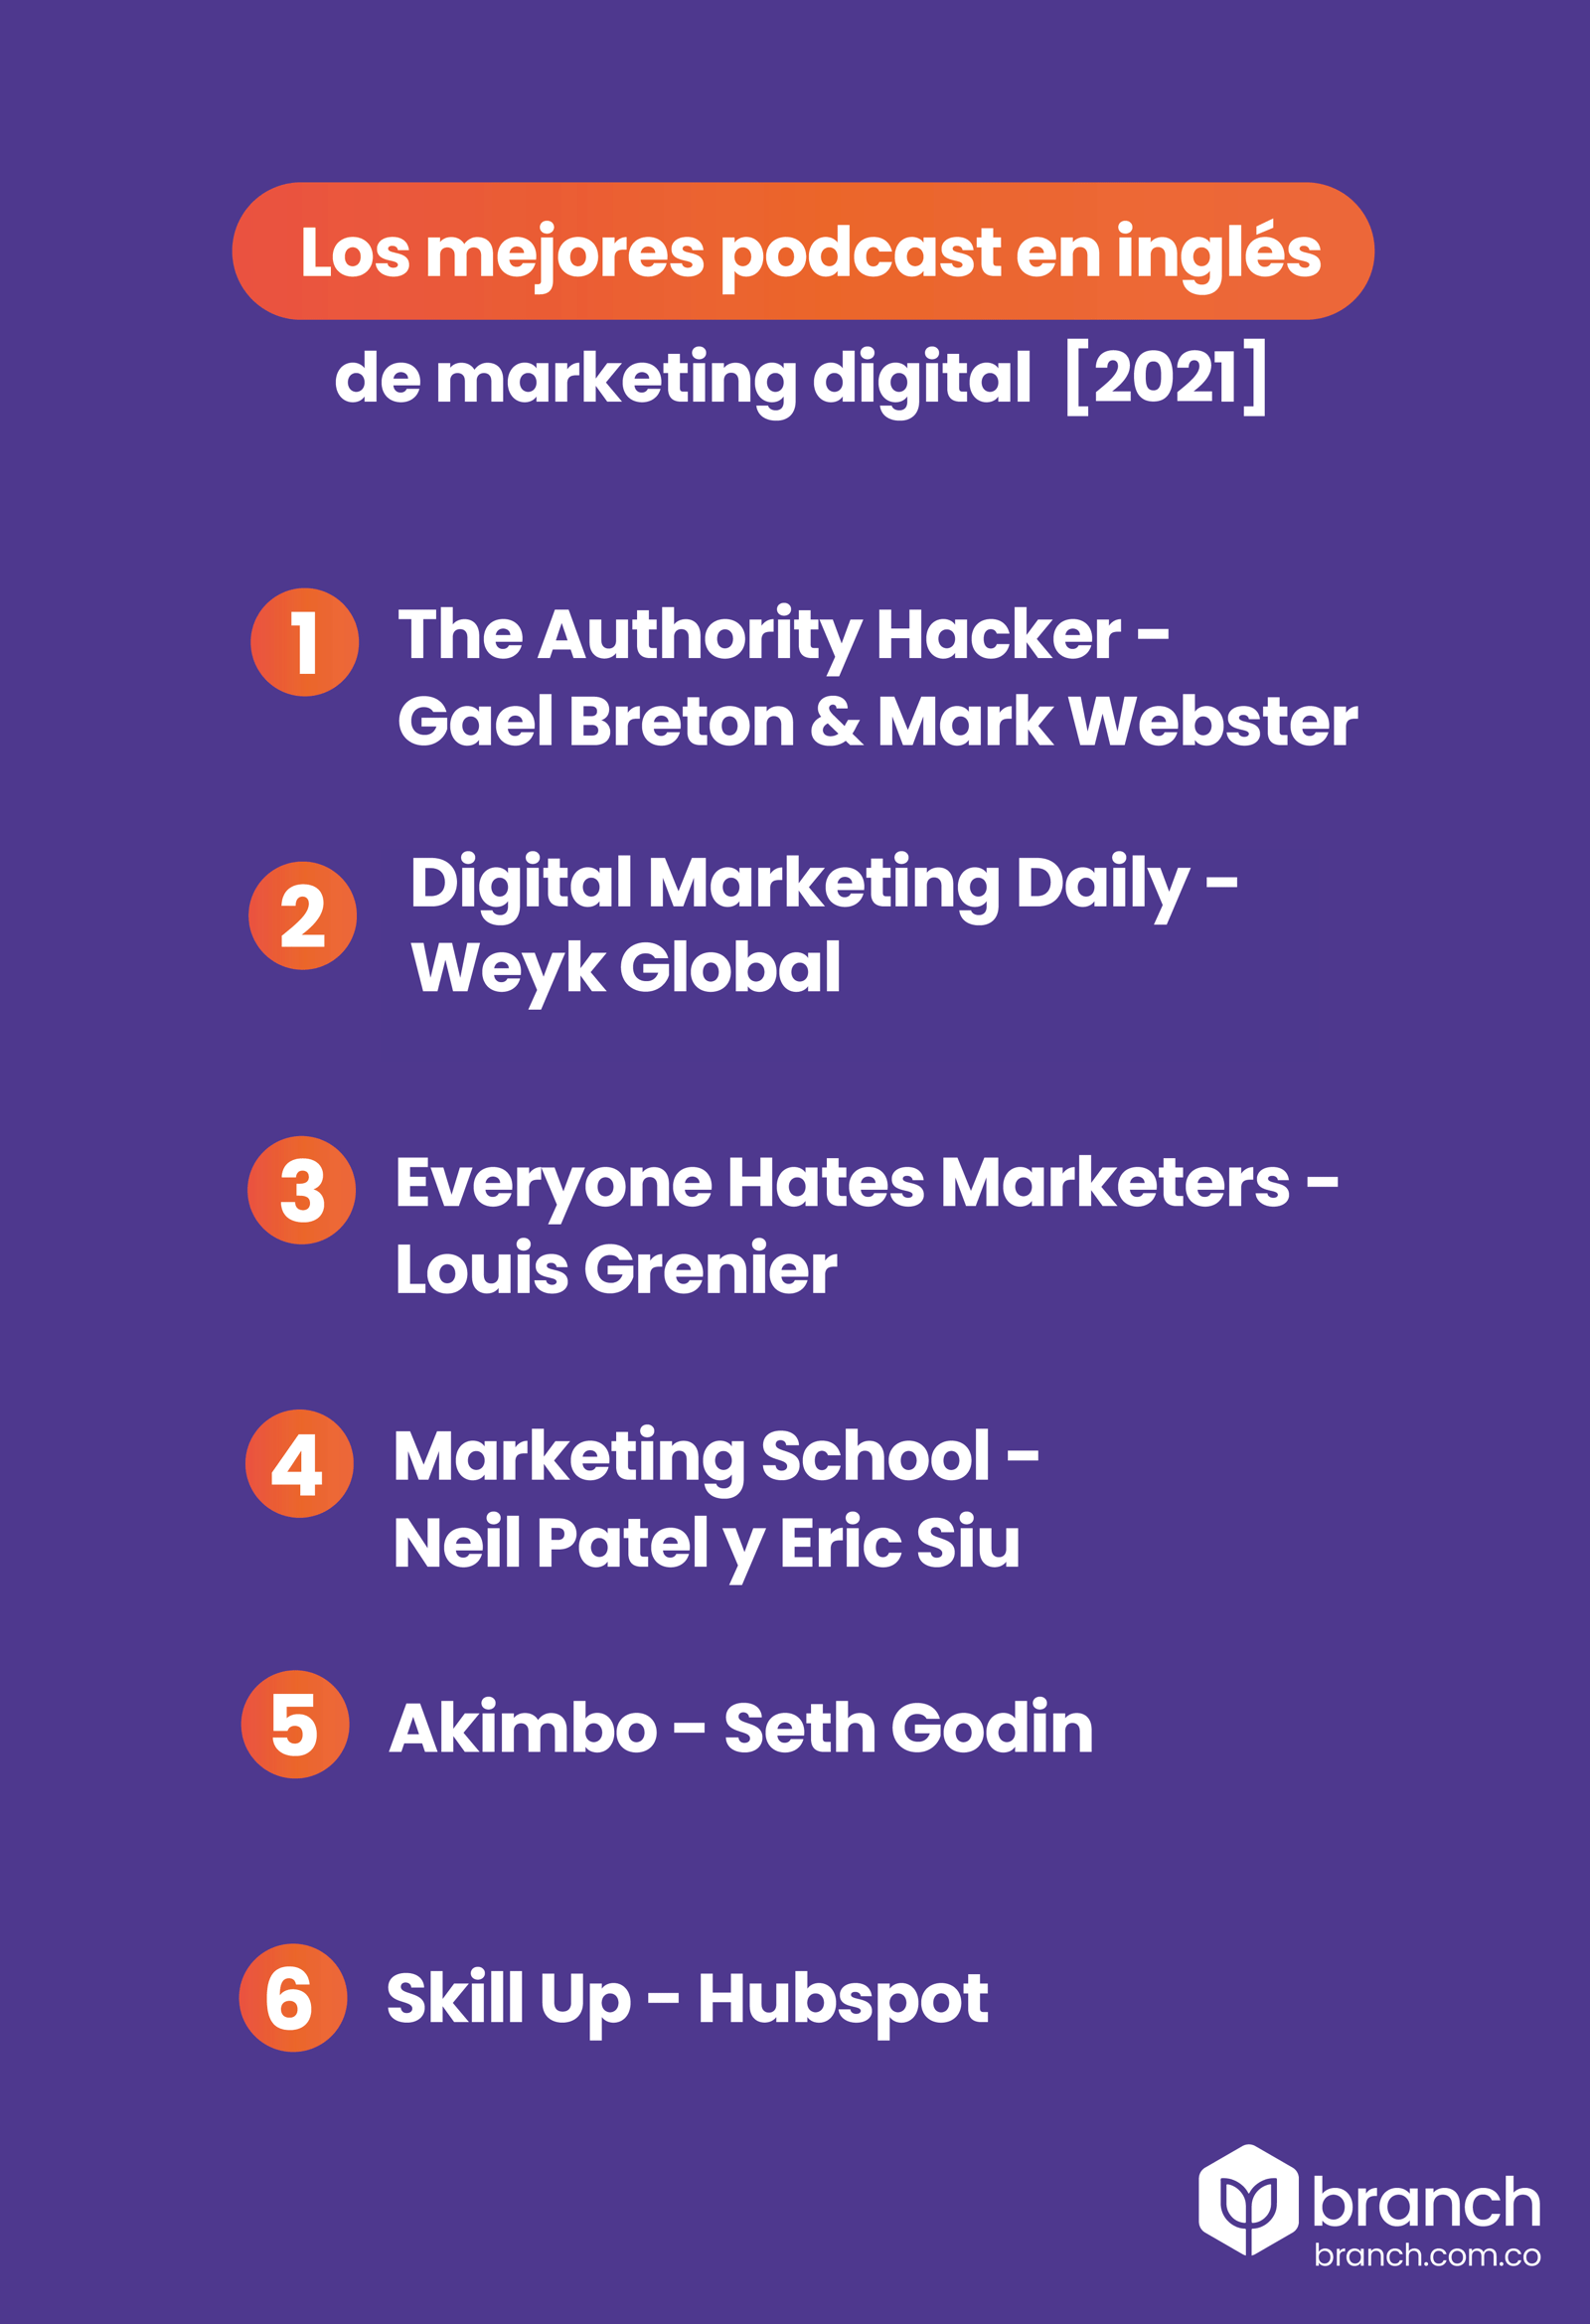 infografia-los-mejores-podcast-en-inlges-de-marketing-digital-2021